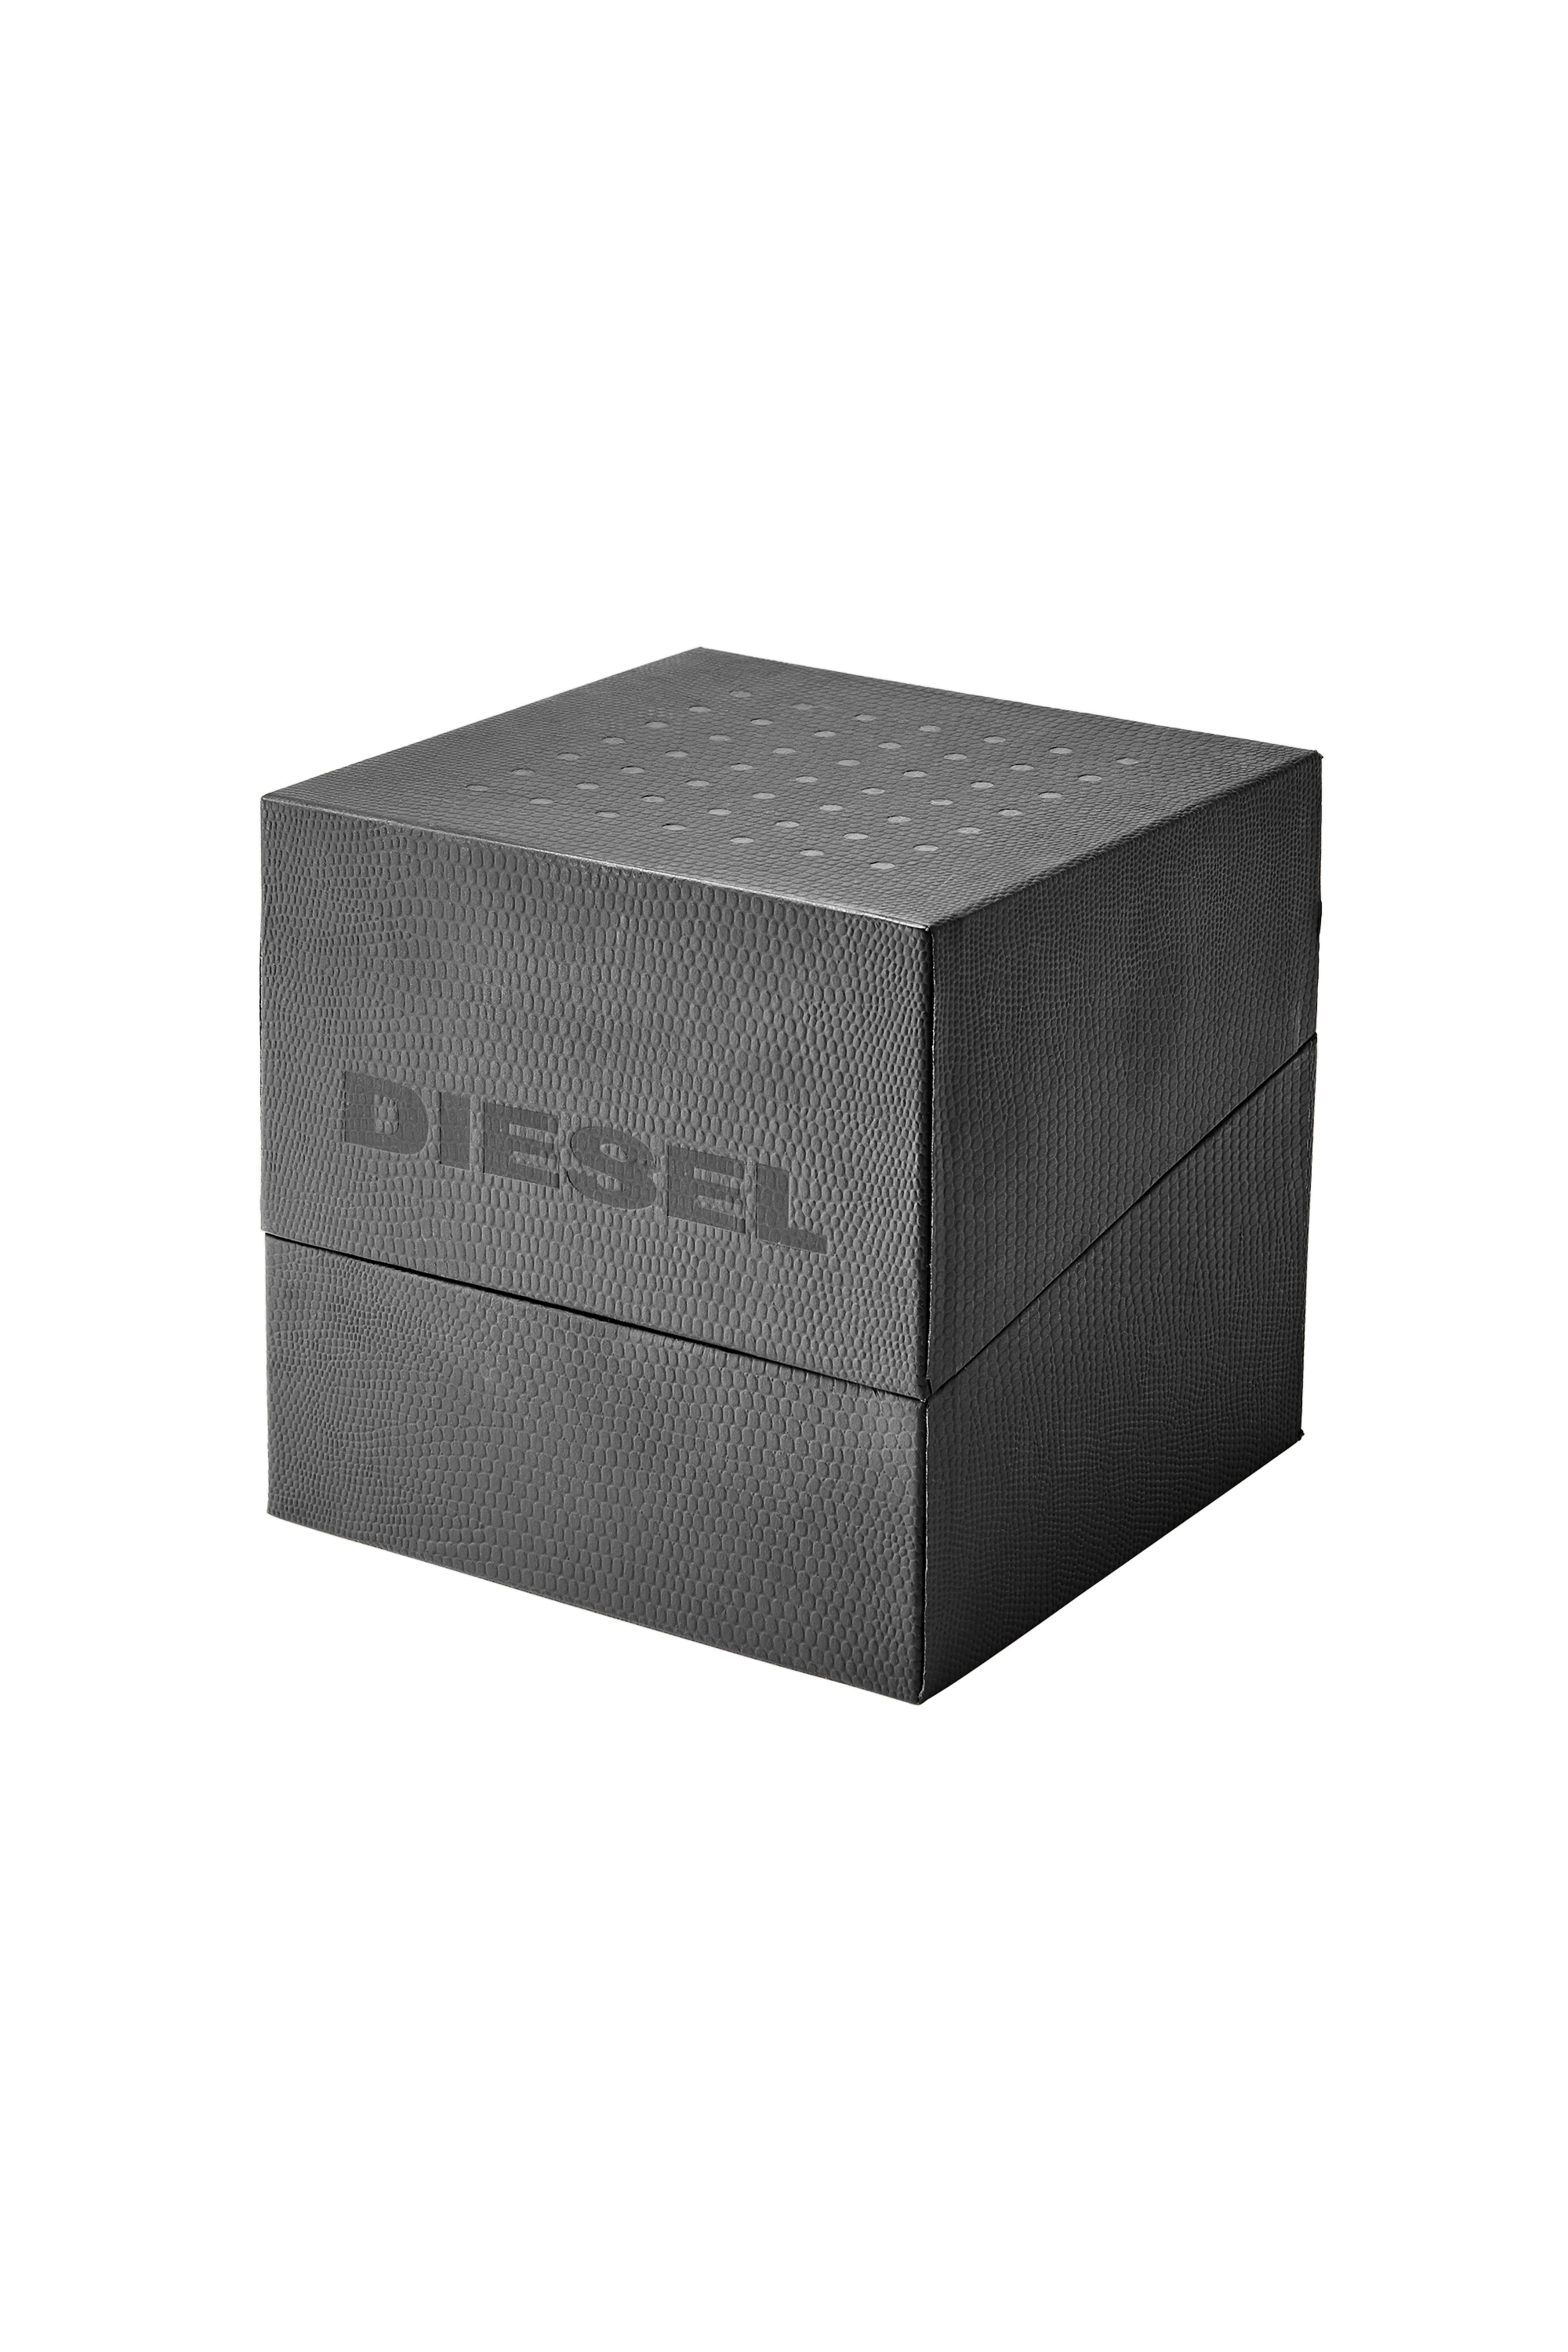 Diesel - DZ4525, Negro/Dorado - Image 4